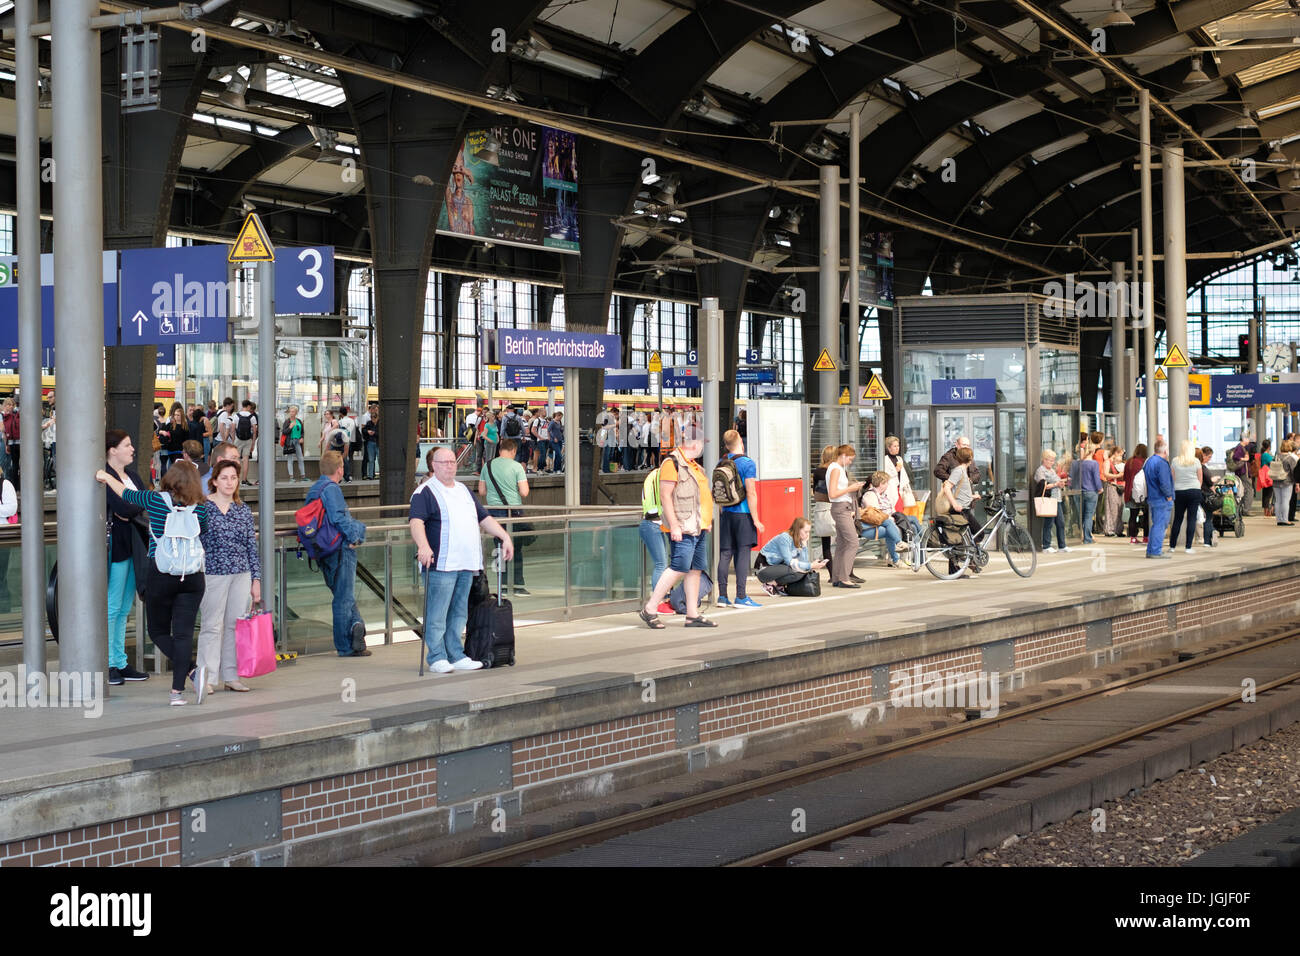 Berlino, Germania - Luglio 06, 2017: persone in attesa per il treno sulla piattaforma presso la stazione del treno Friedrichstrasse a Berlino, Germania Foto Stock